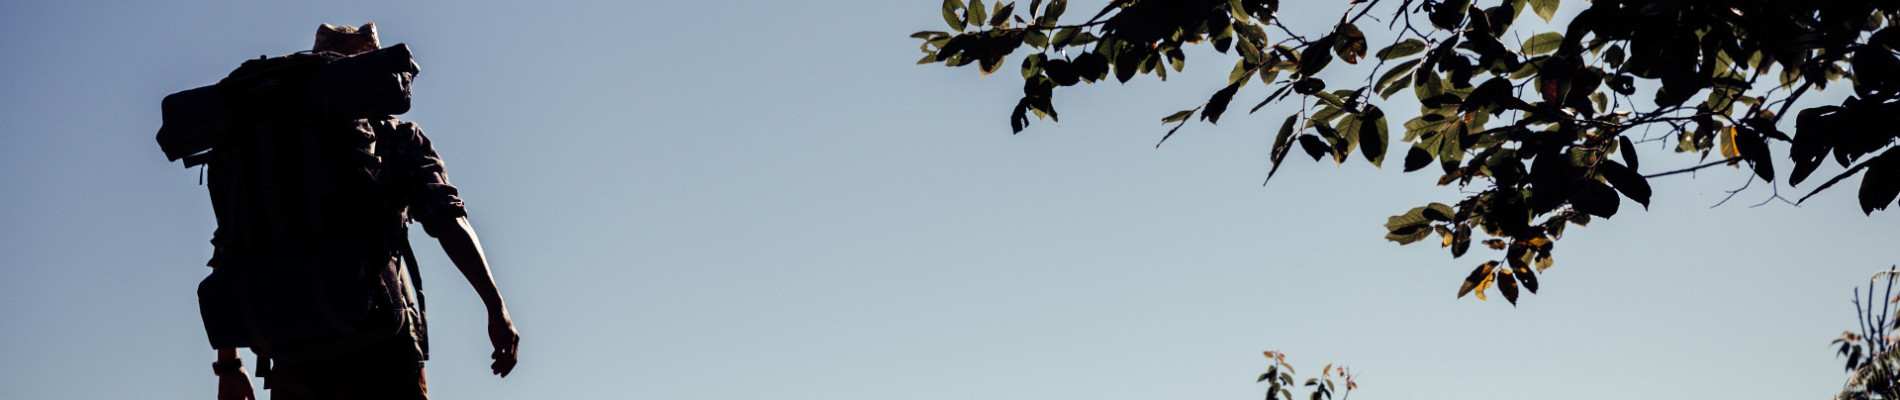 silhouette van een man die buiten loopt met een blauwe lucht